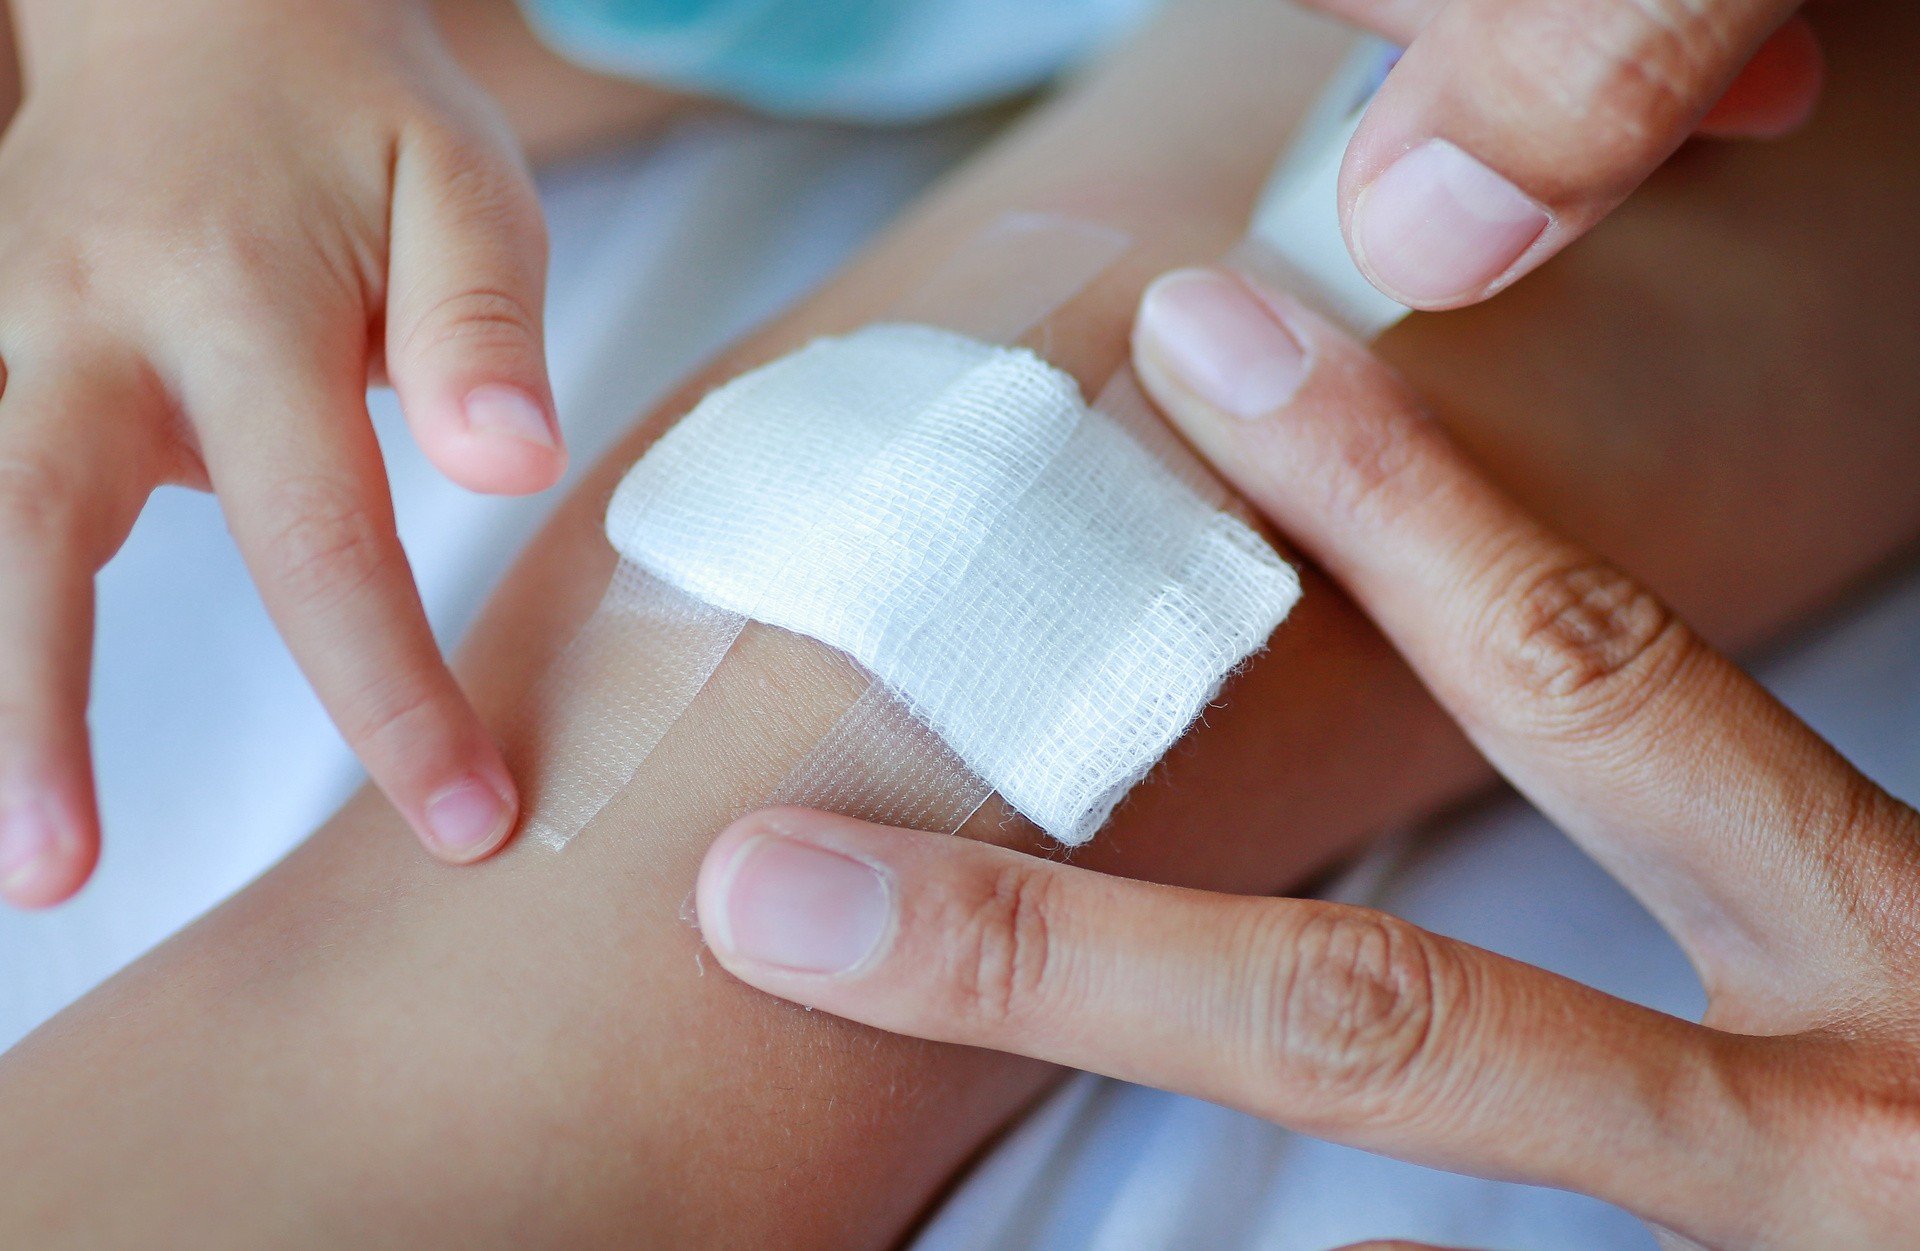 Domowe sposoby na skaleczenia i rany. Jak wygląda zakażenie rany i jak mu  zapobiec, gdy nie mamy pod ręką środków odkażających? | Strona Zdrowia